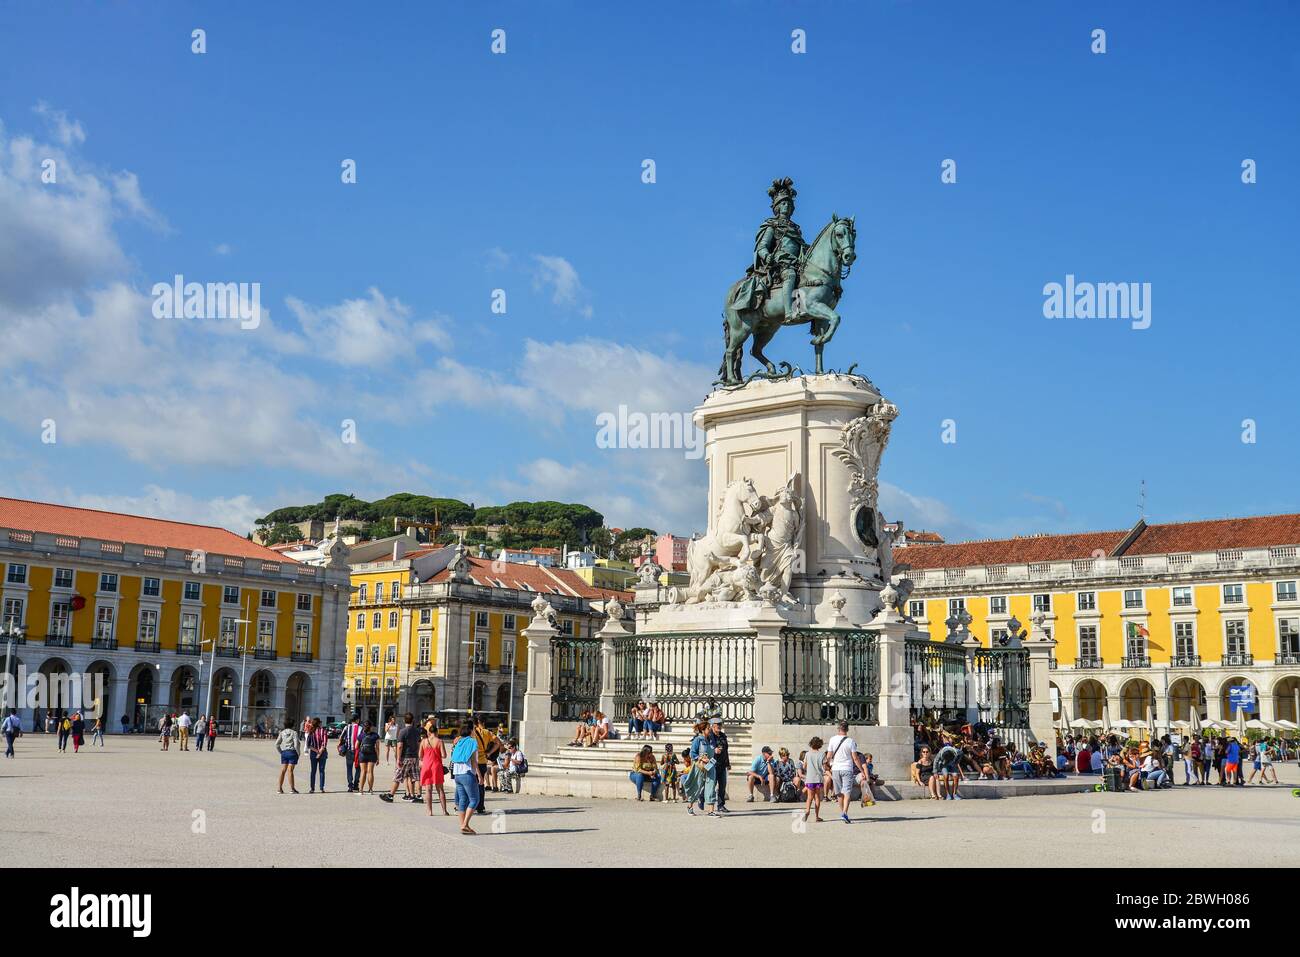 LISBONA, PORTOGALLO - 2 LUGLIO 2019: Piazza del Commercio a Lisbona. E' una delle piazze più importanti e fu sistemata la terra dove il Palazzo reale i Foto Stock